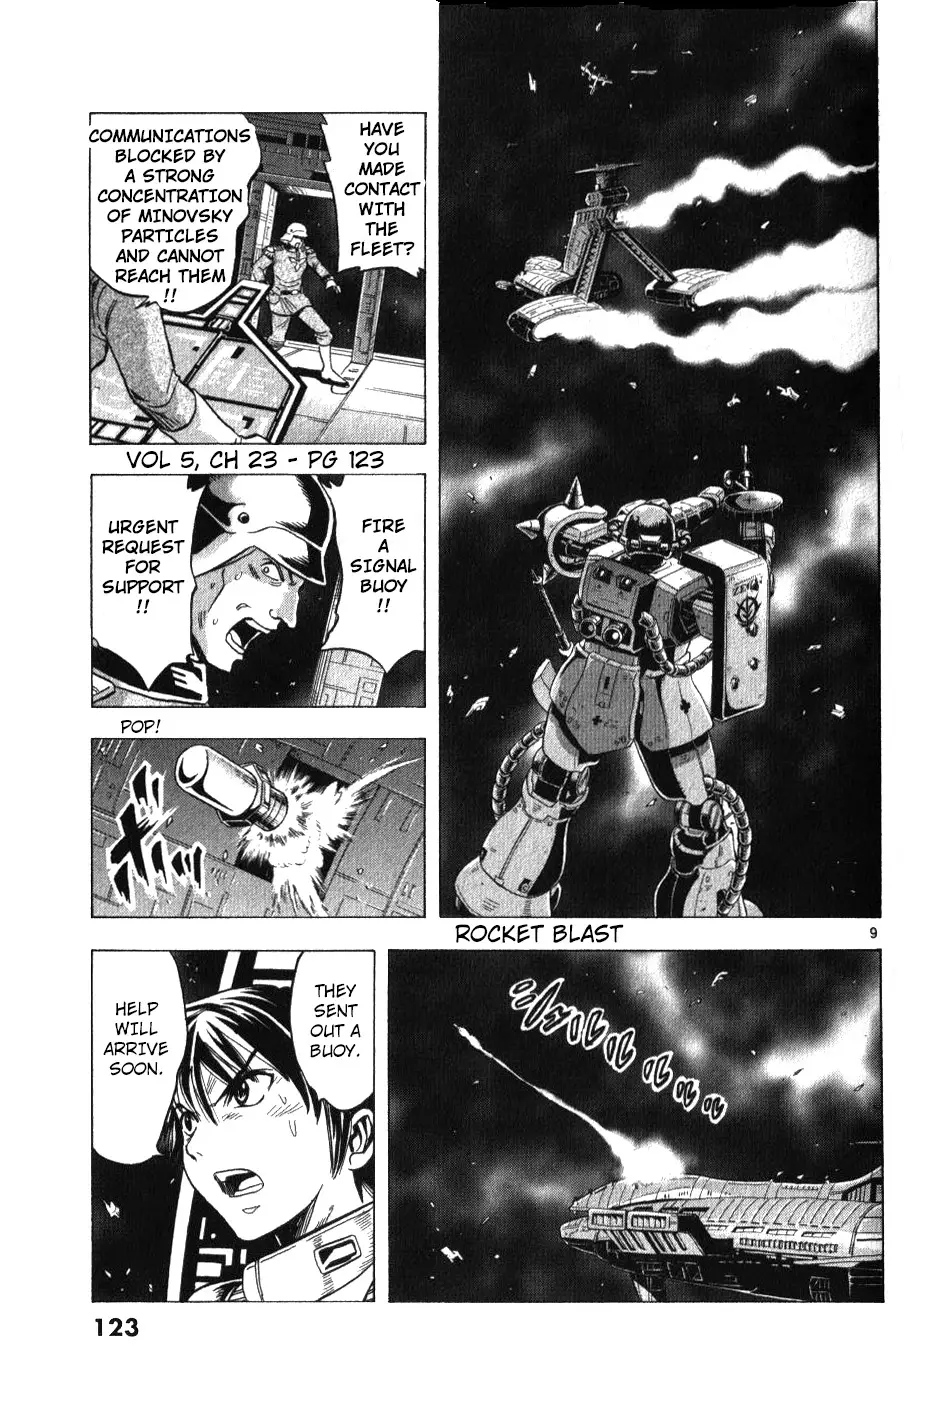 Mobile Suit Gundam Aggressor - 23 page 9-6422d83a